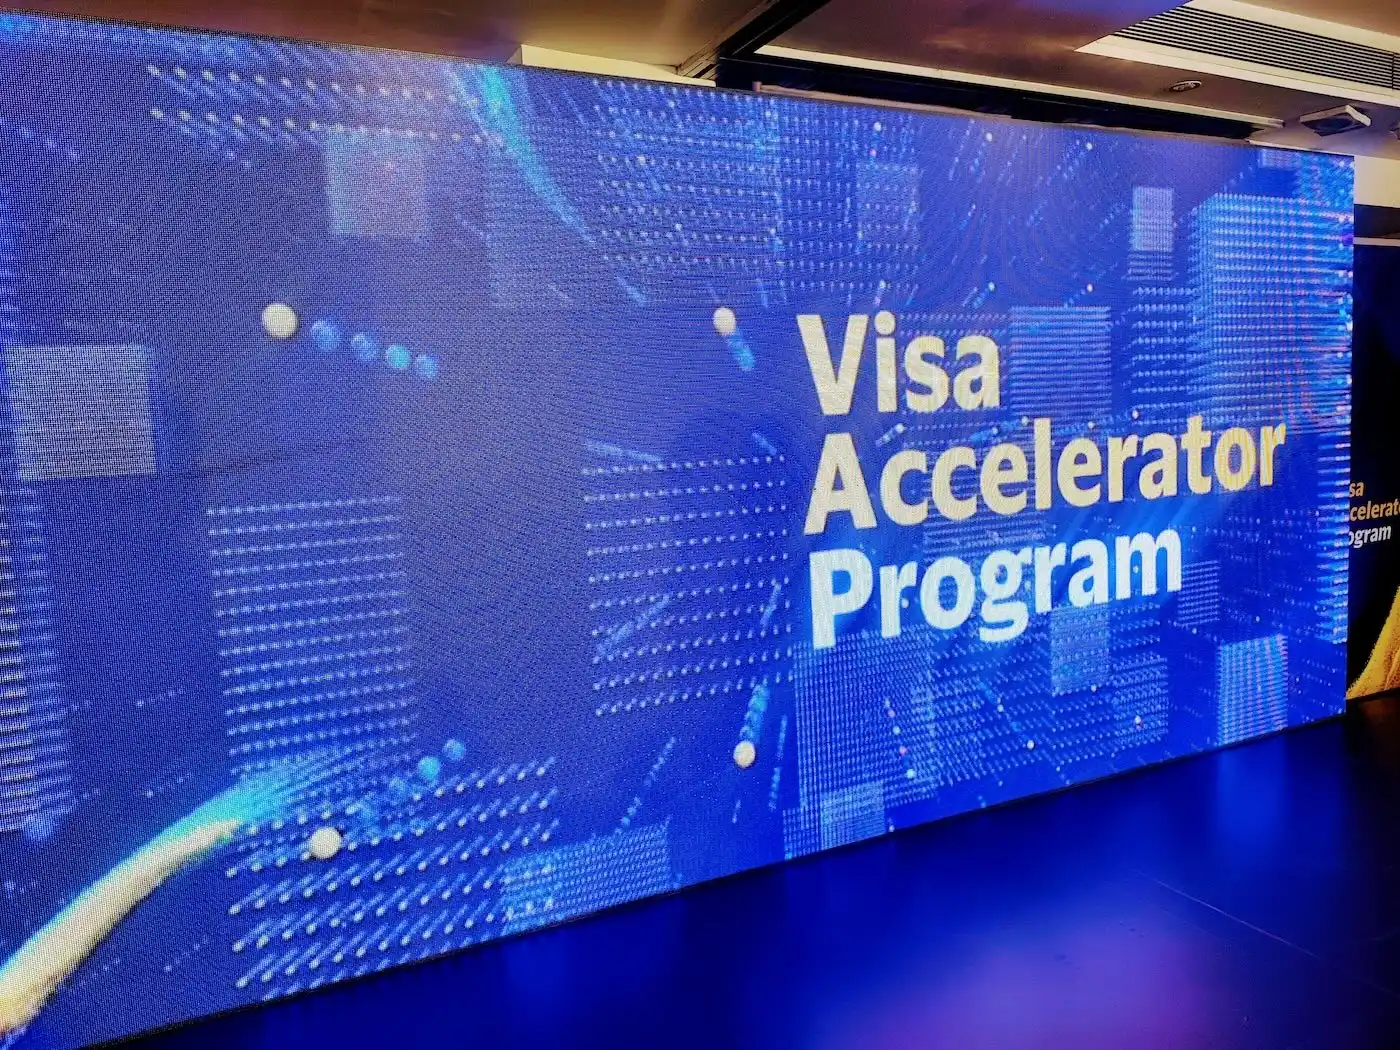 Visa Accelerator program demo day